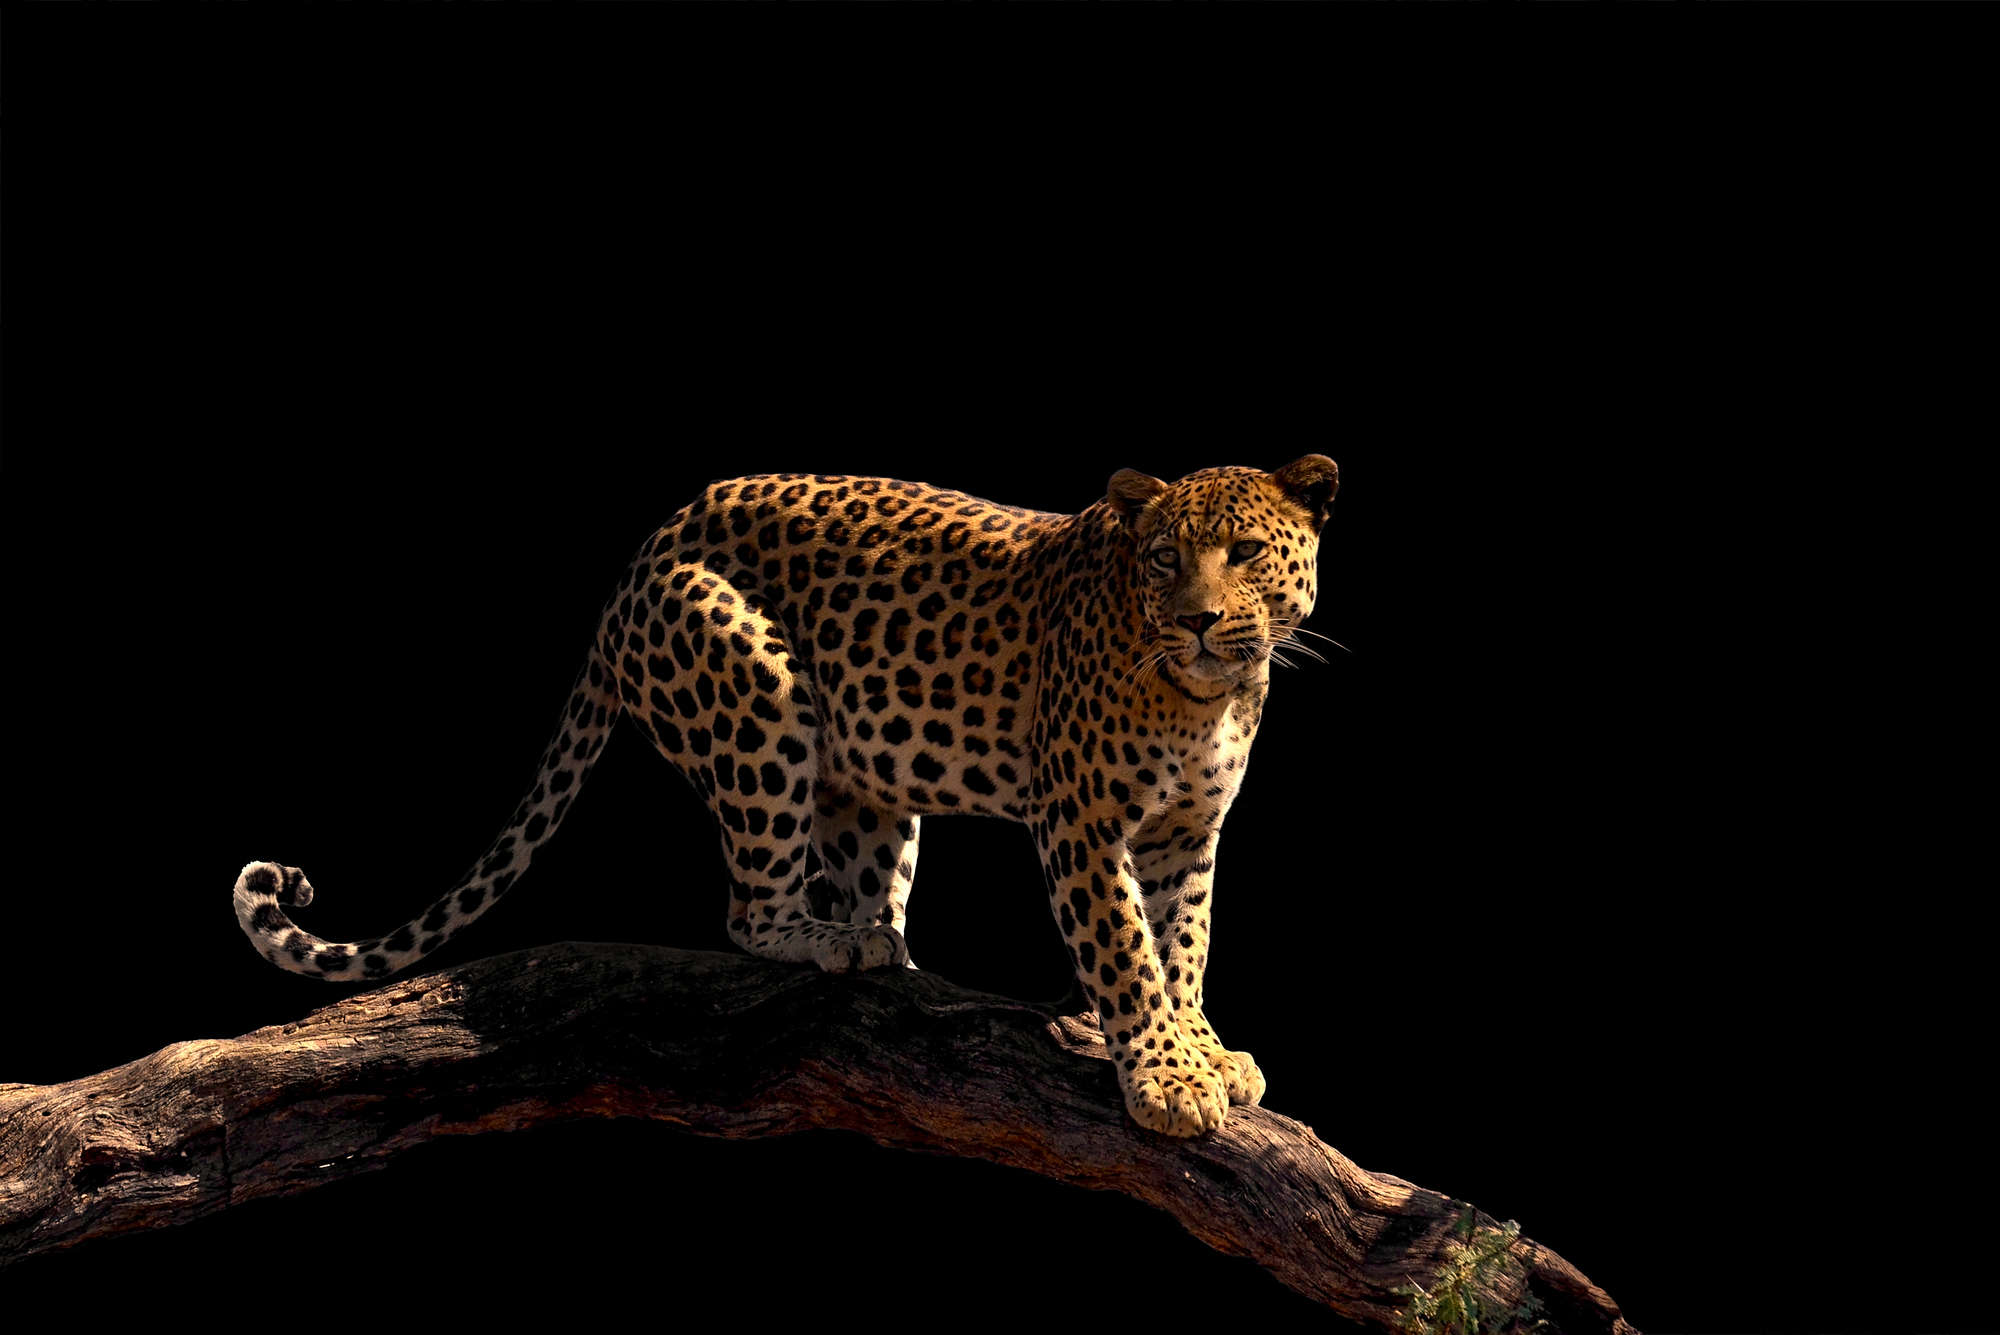             Fotomurali di leopardo in piedi su un ramo su vinile testurizzato
        